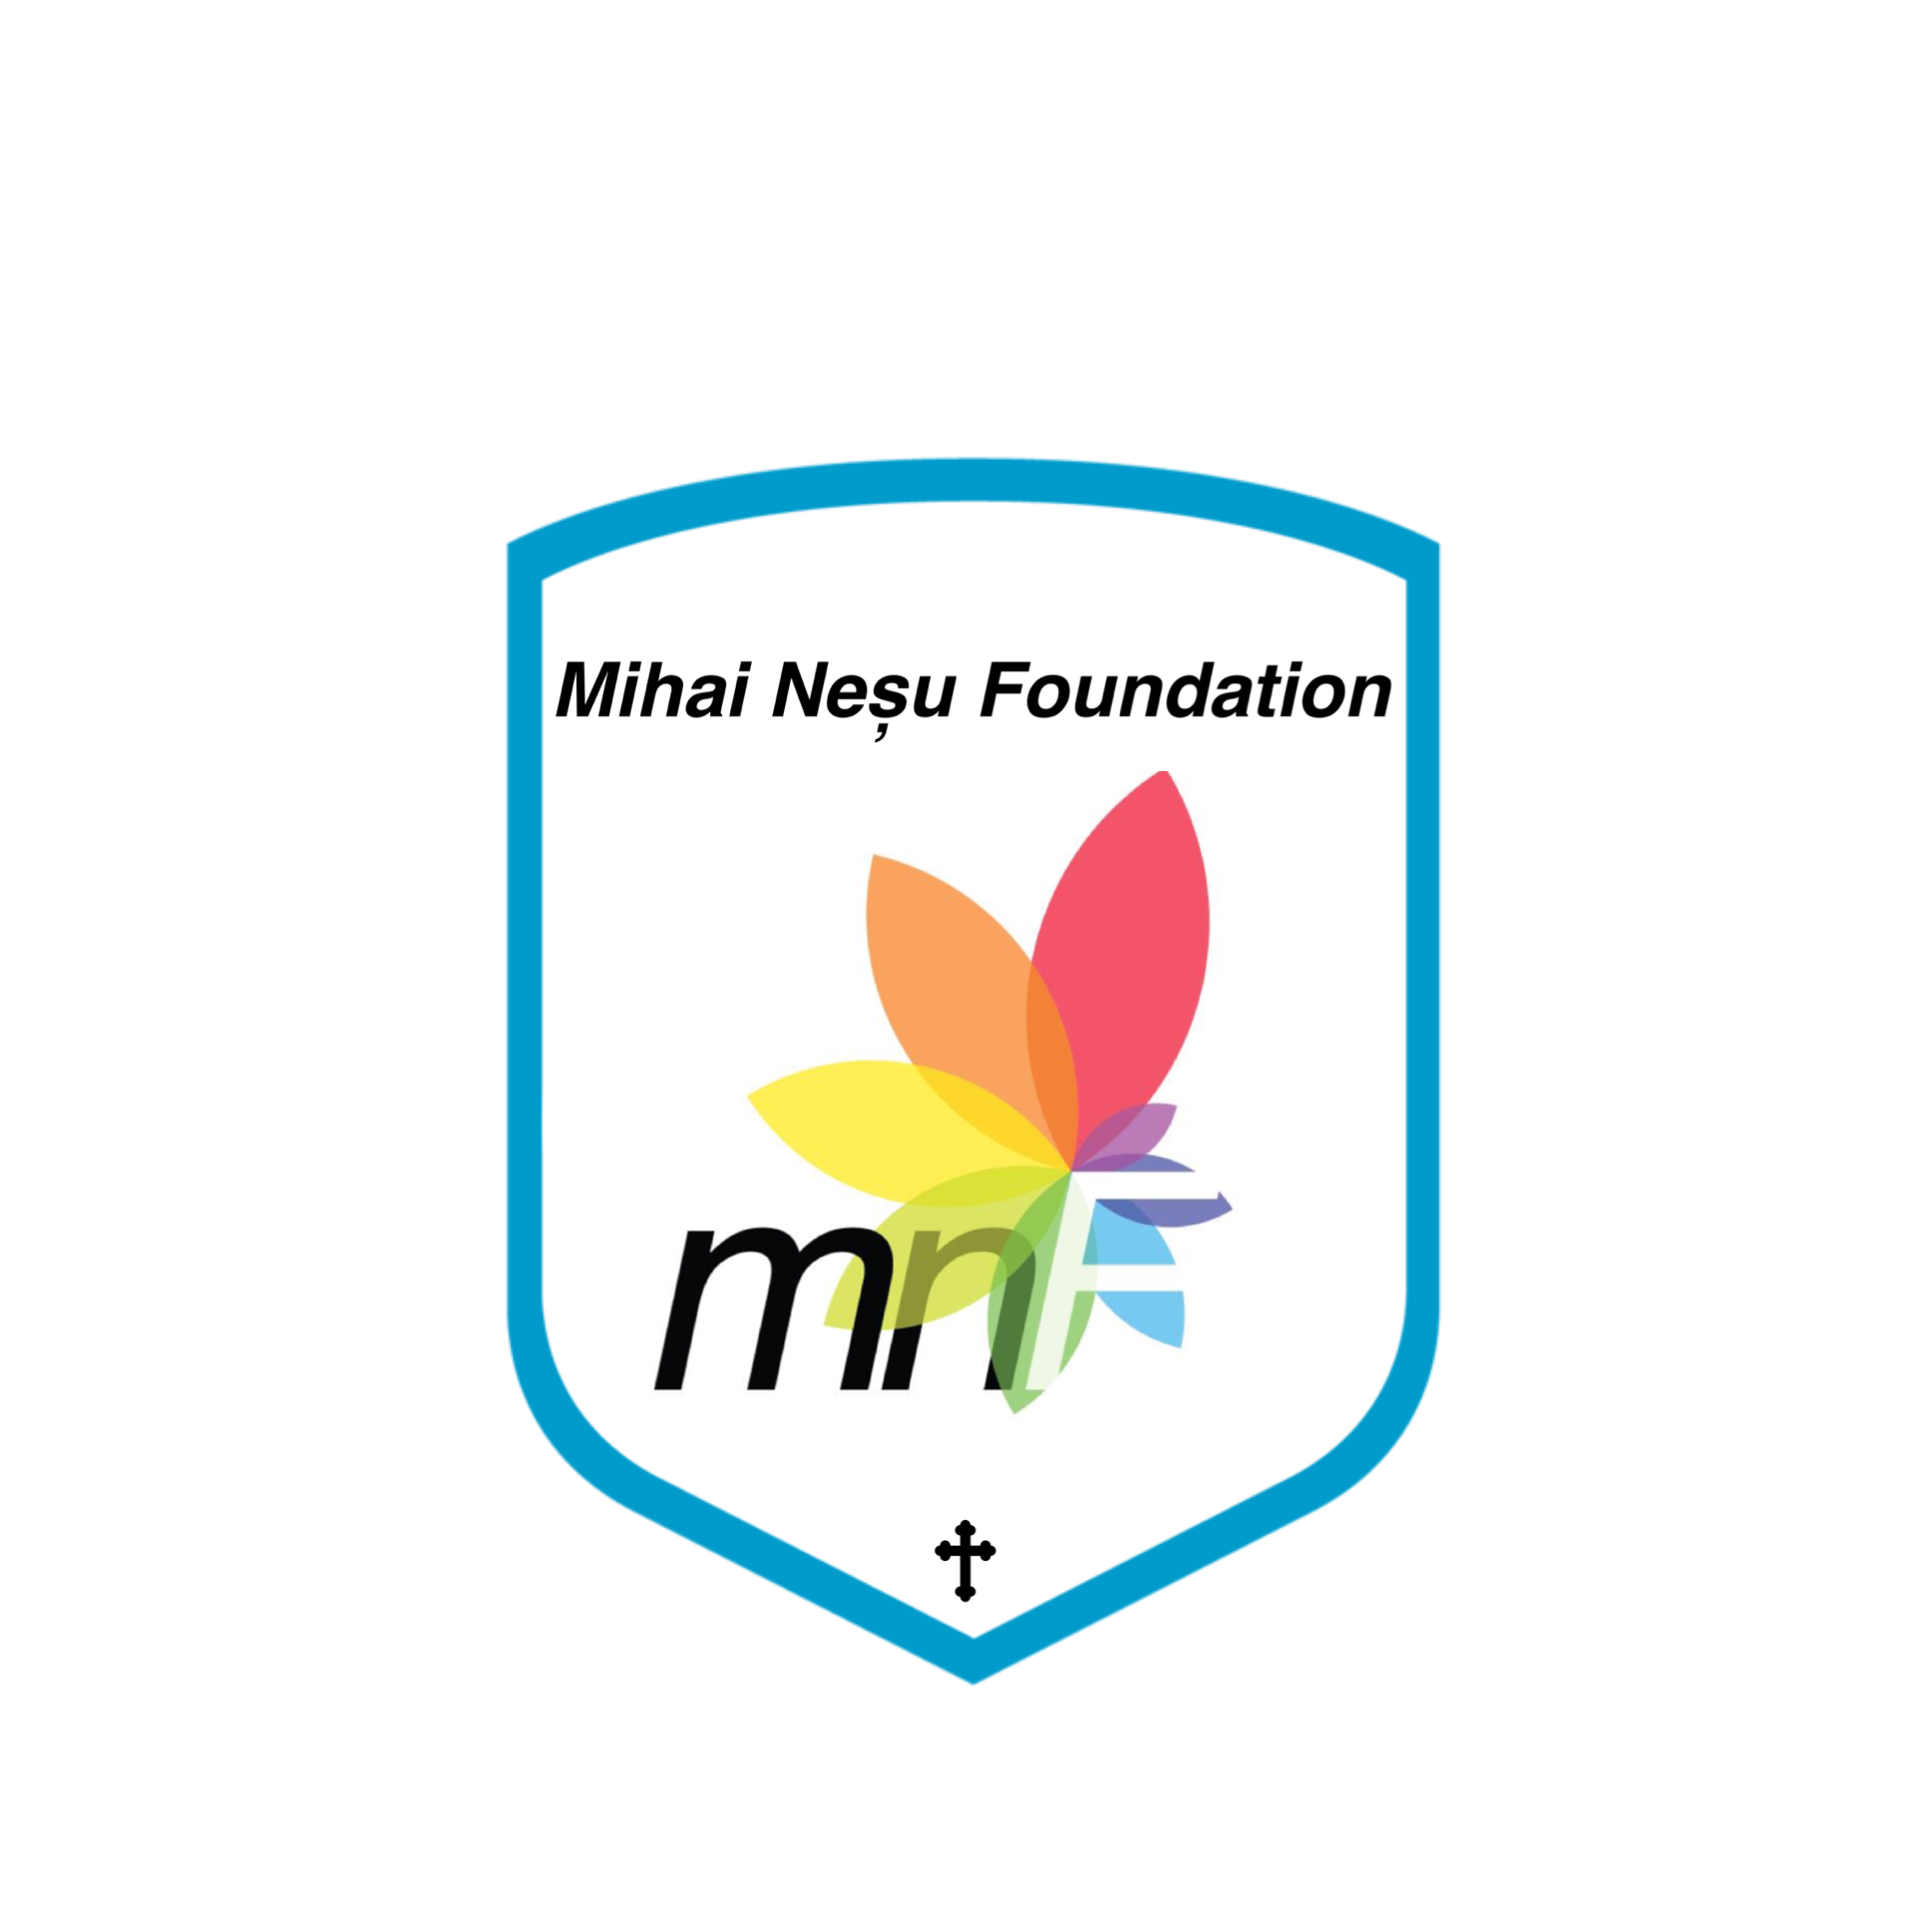 Fundatia Mihai Nesu Foundation logo